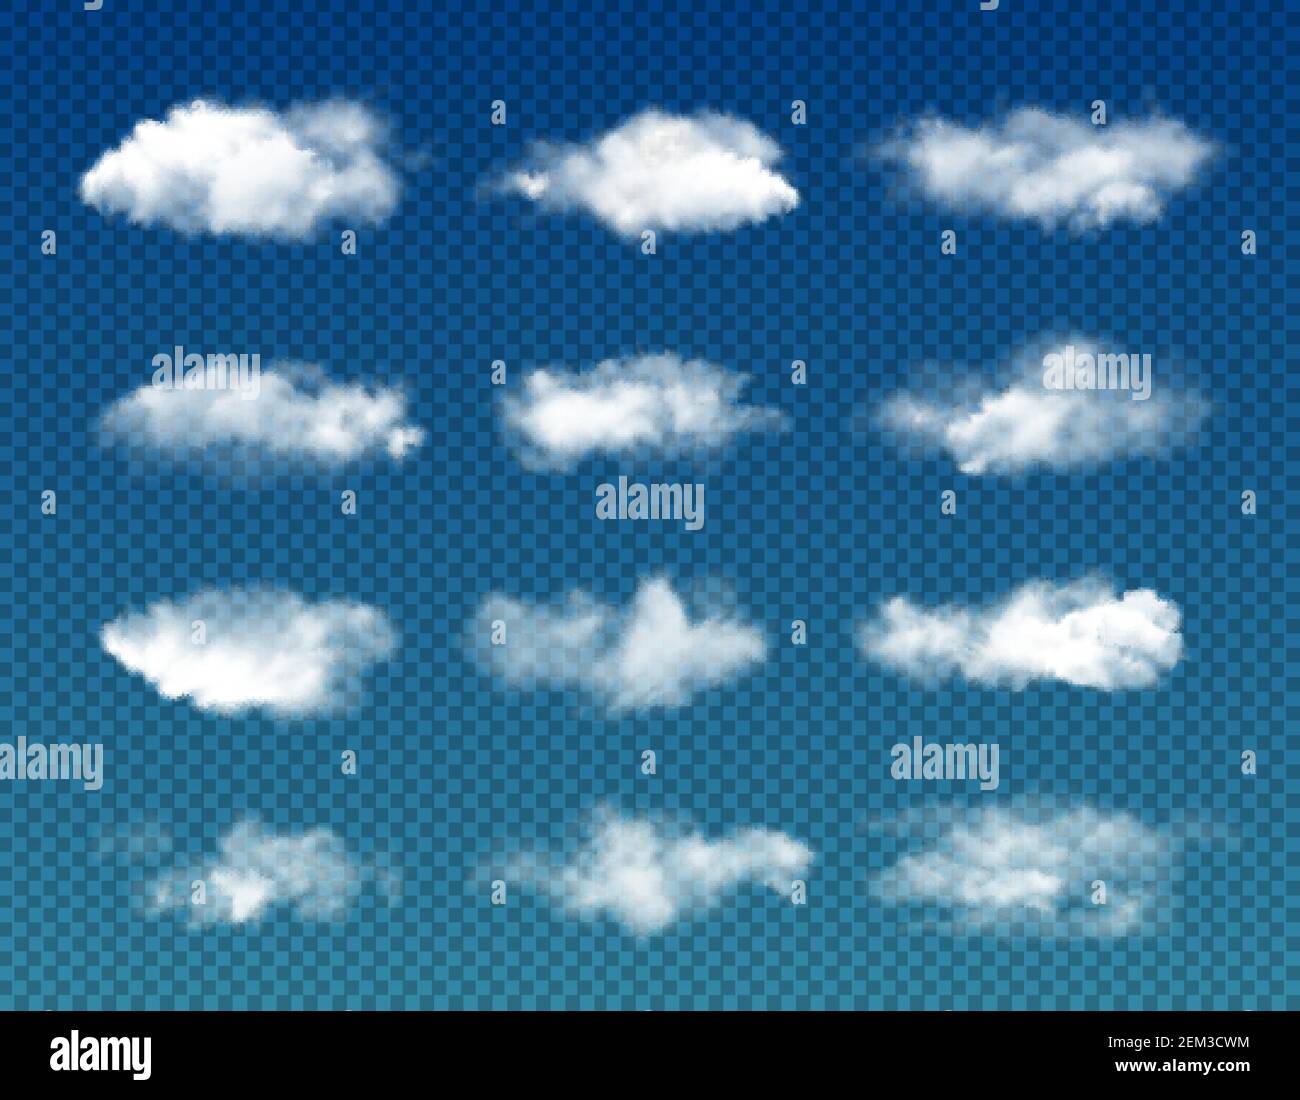 Nuages blancs sur fond transparent, ciel nuageux vectoriel, air brumeux, ciel nuageux et nuages moelleux de cumulus. La nature, le temps, l'atmosphère et lui Illustration de Vecteur